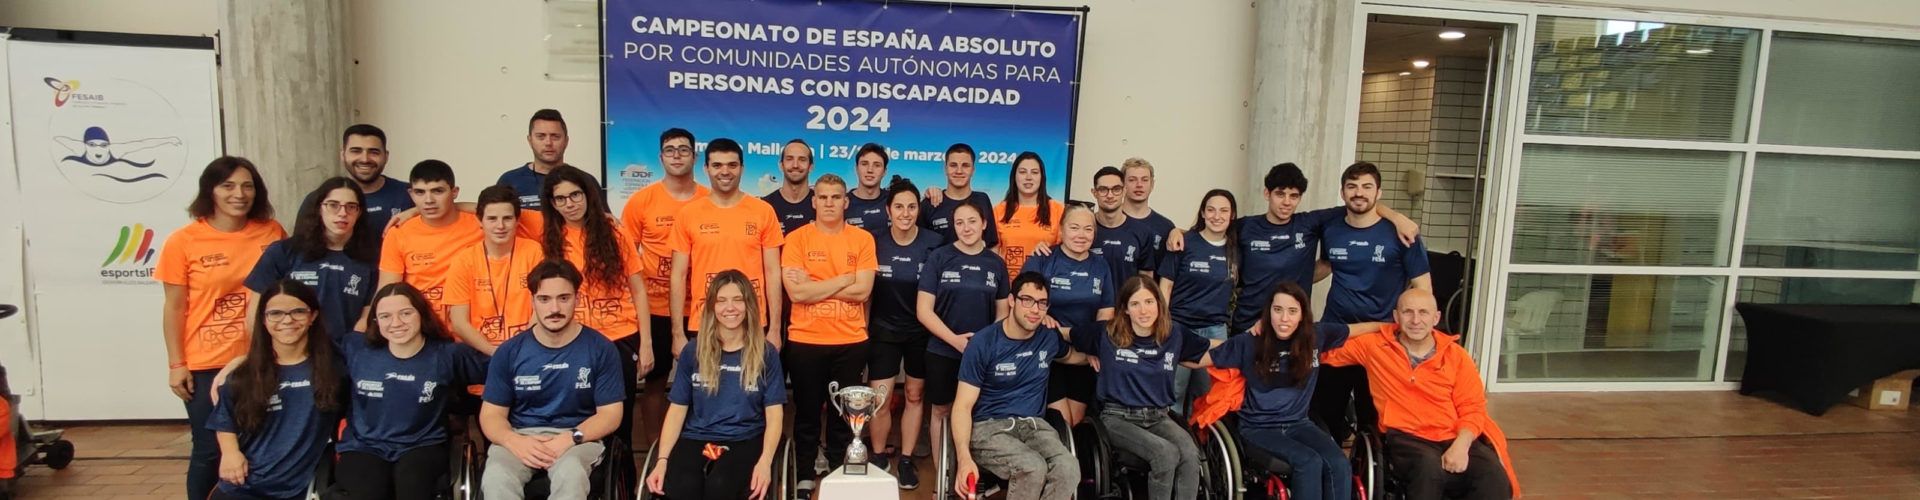 El vinarocense Sergi Castell, en el Campeonato de España de natación por Comunidades Autónomas para personas con discapacidad